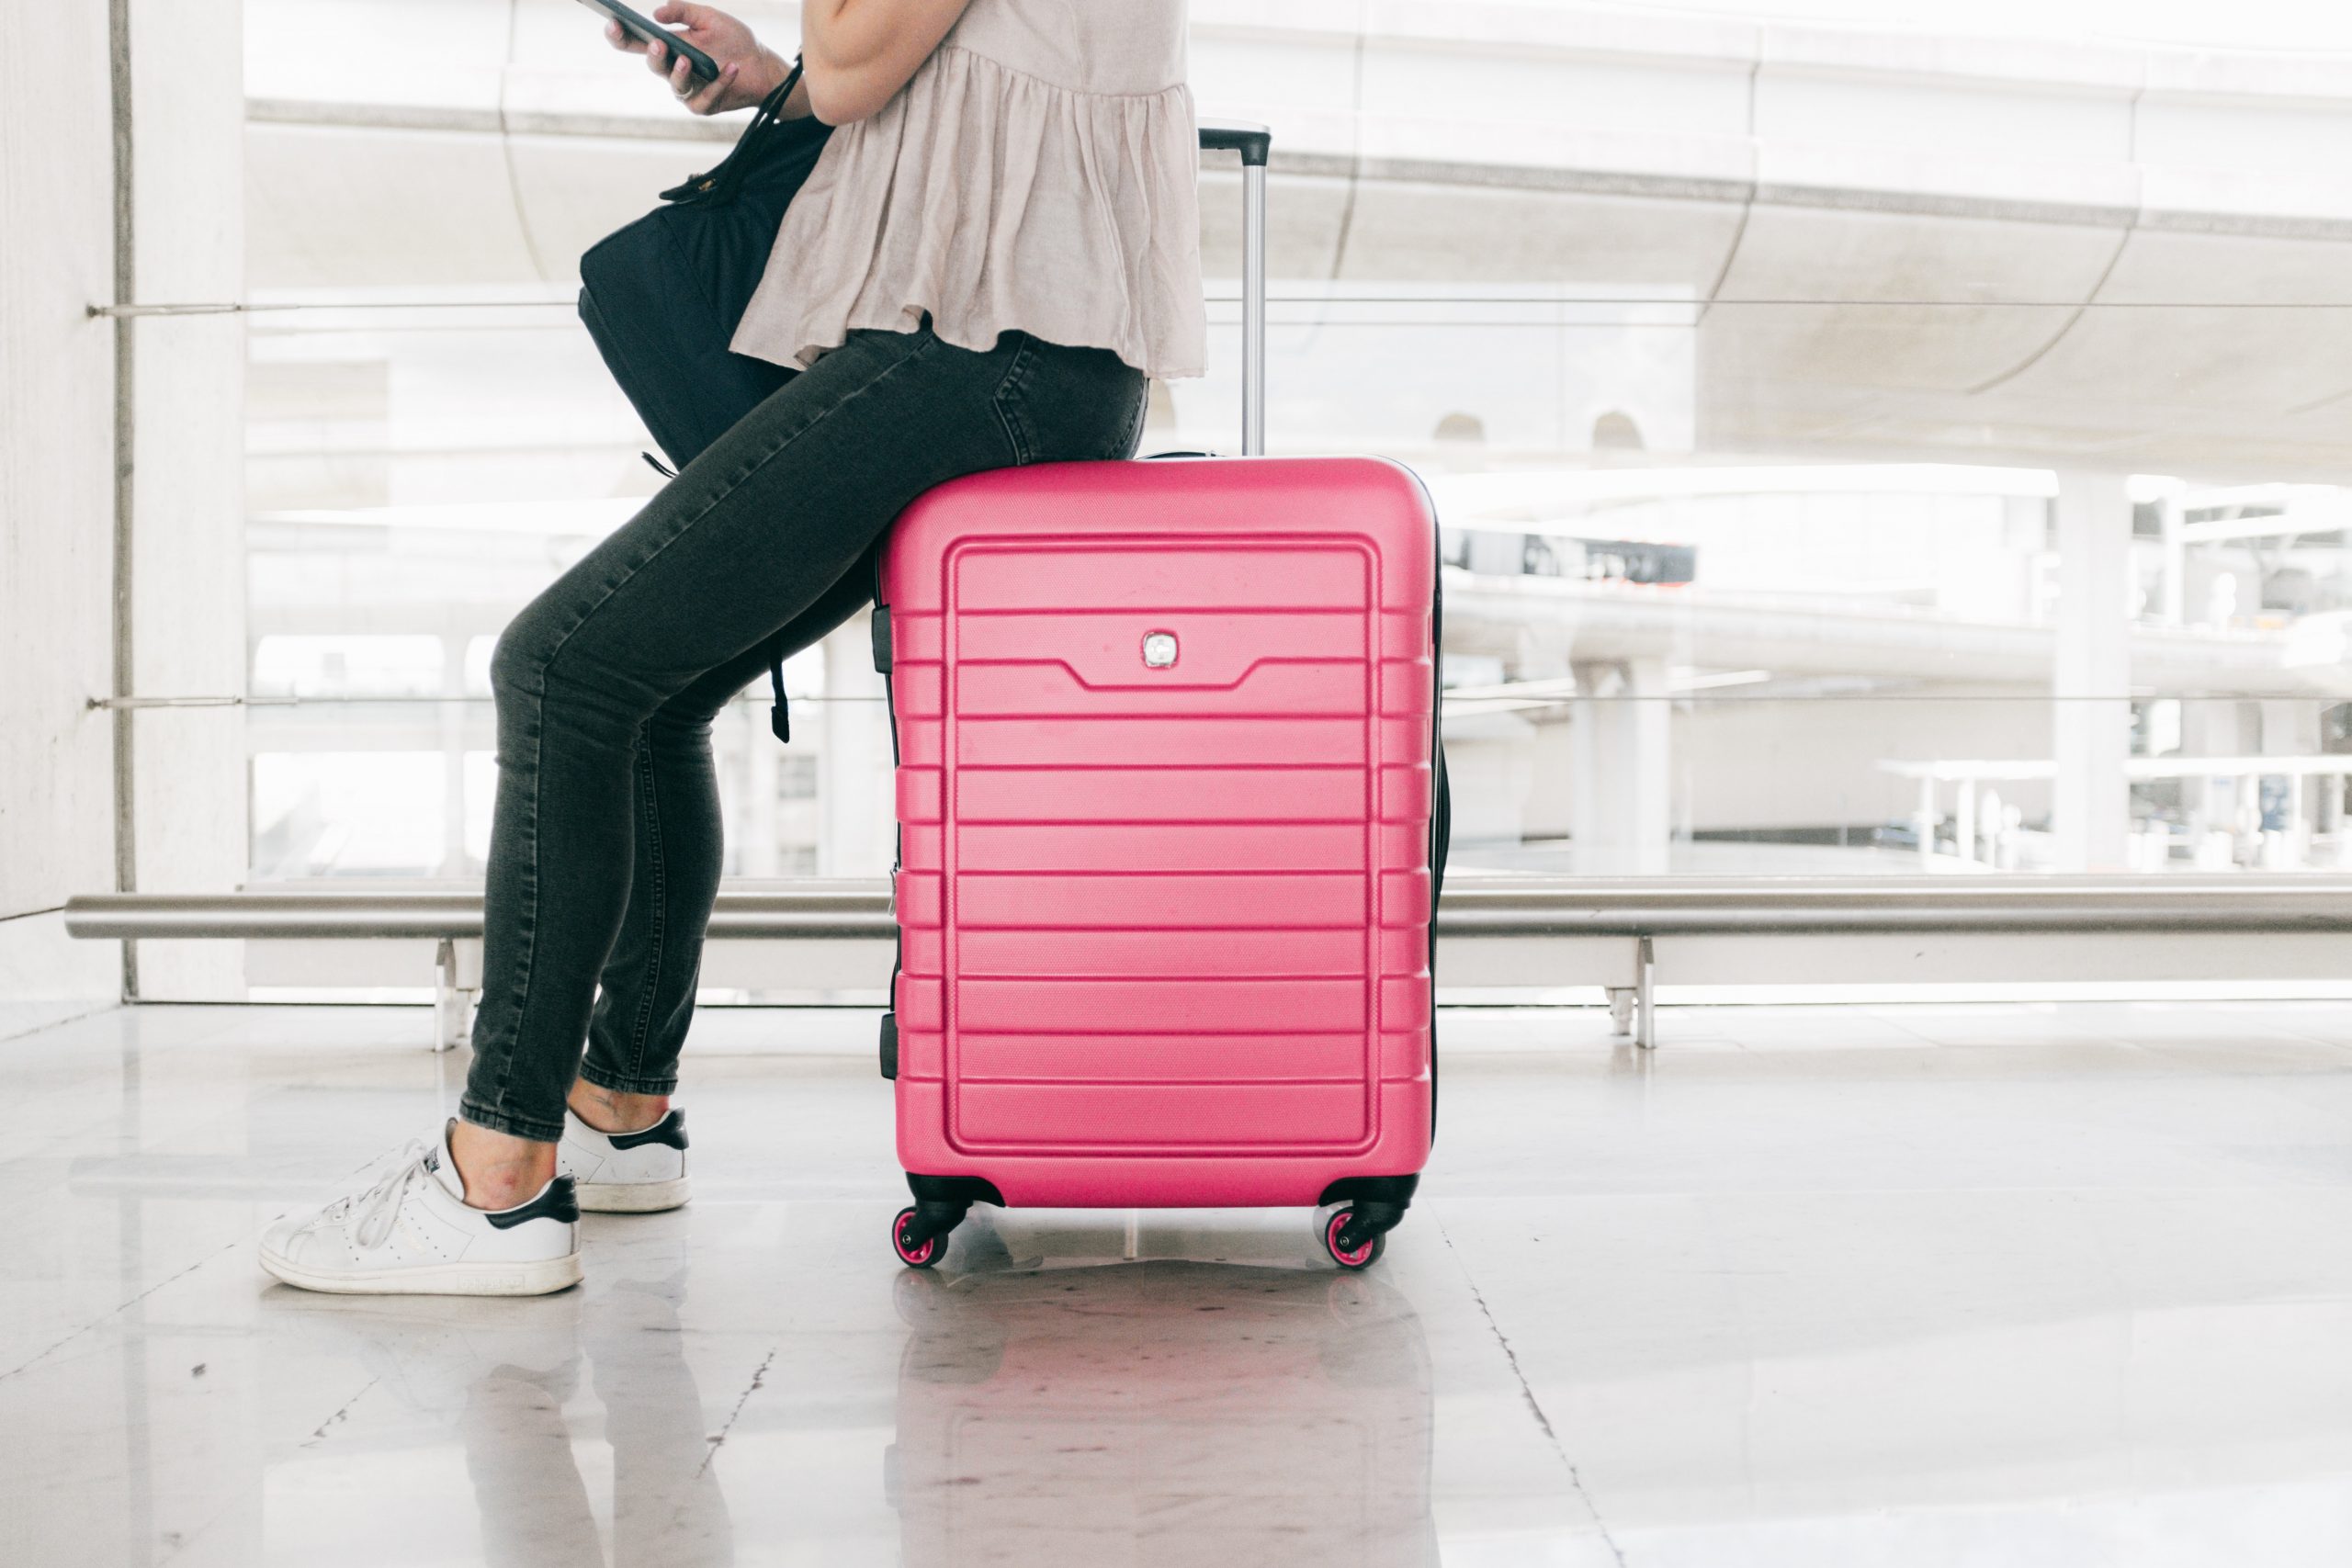 Pakowanie walizki na wyjazd – zrób to szybko i sprawnie!